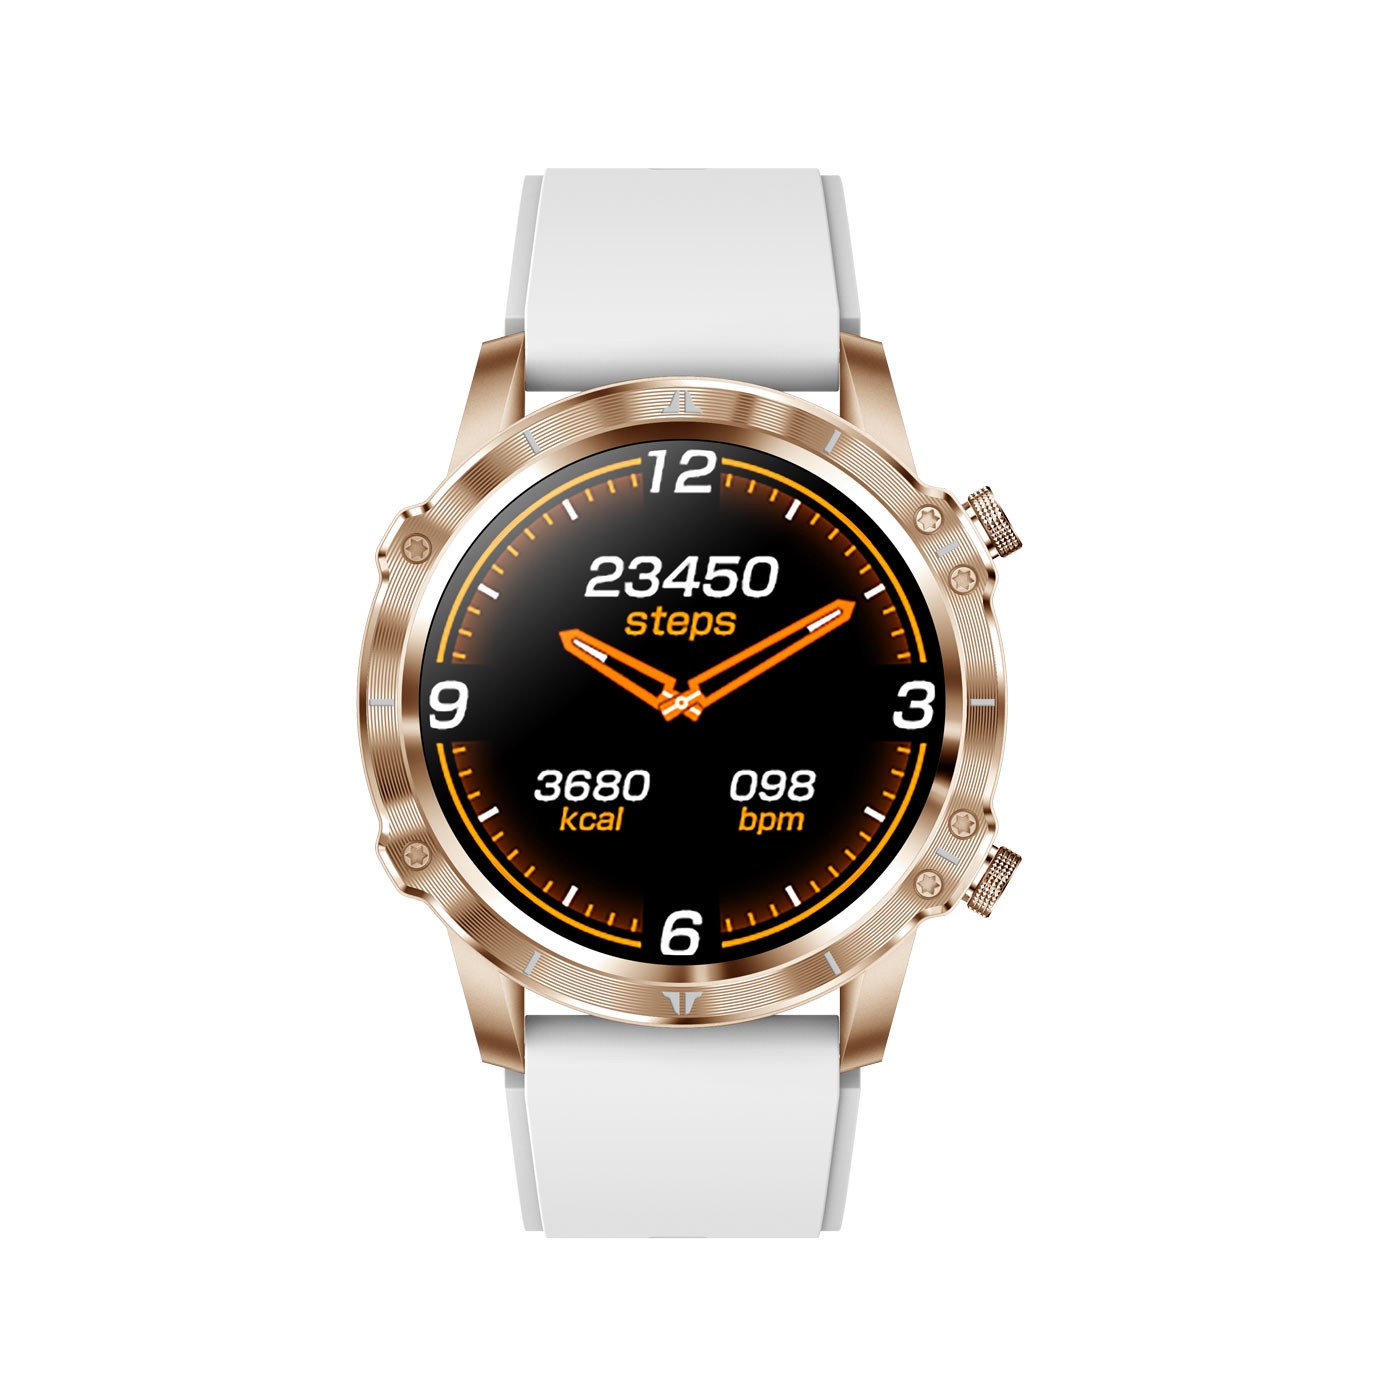 Adventure Smartwatch, gold CARNEO HR+ gold,